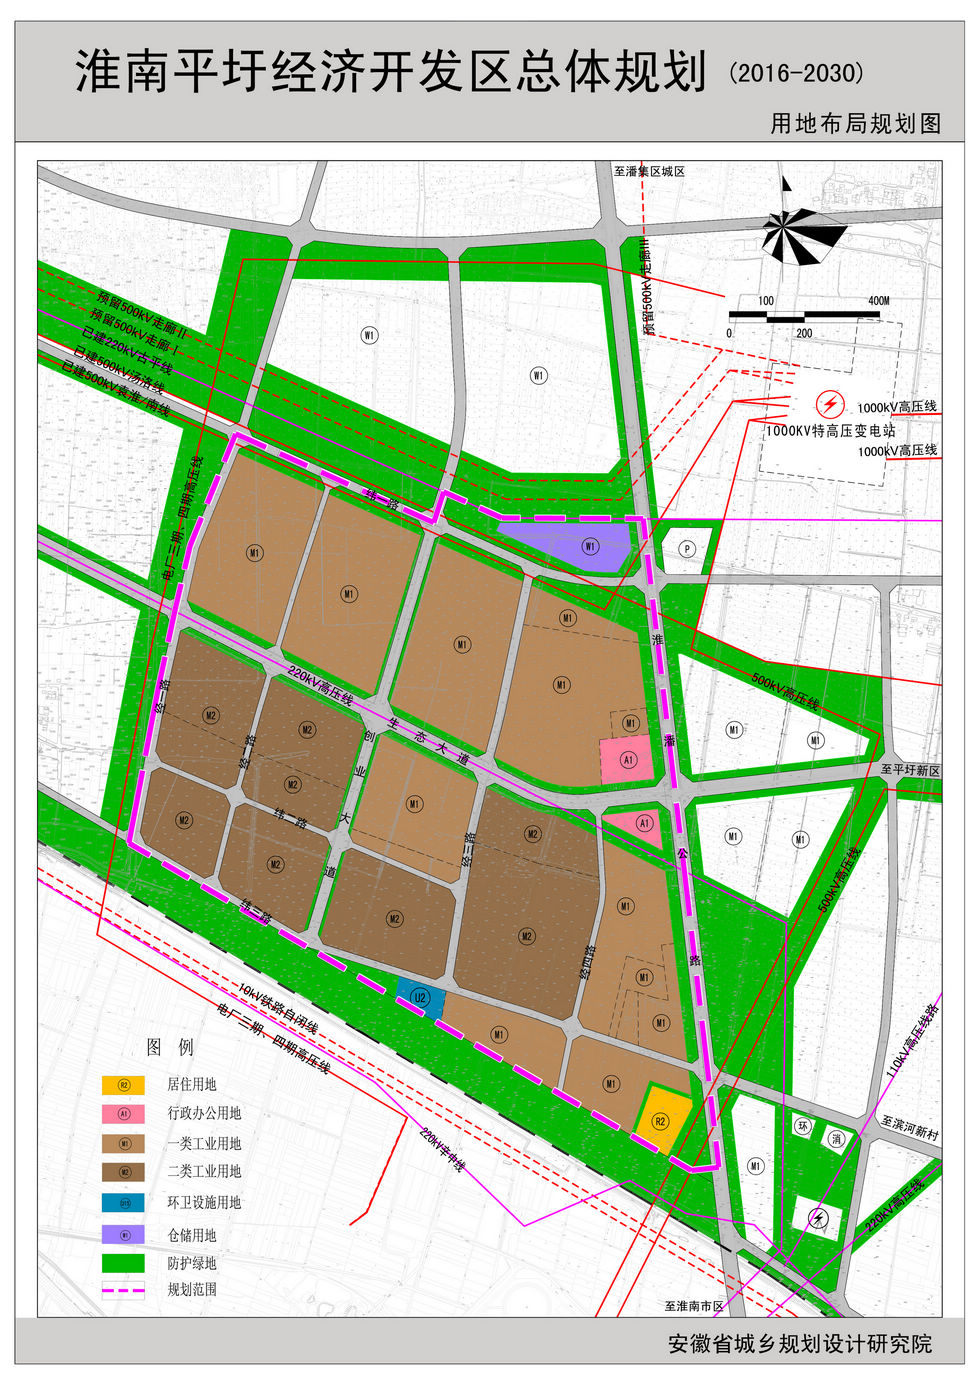 《淮南平圩经济开发区总体规划(2016-2030)》公示